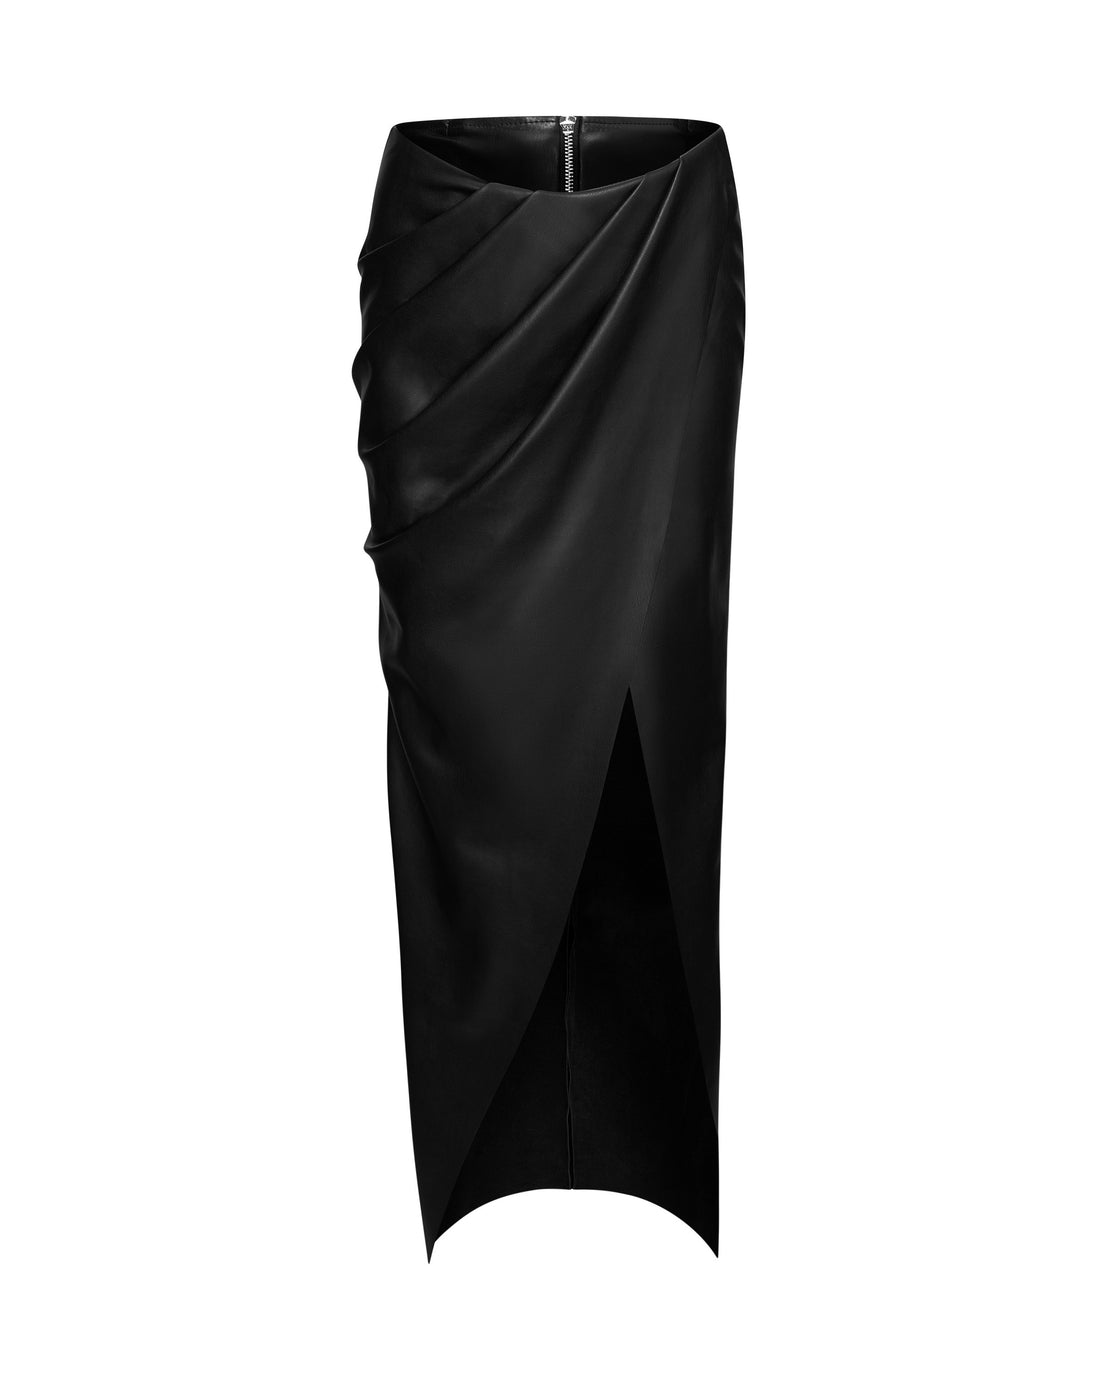 Black High Split Leather Skirt